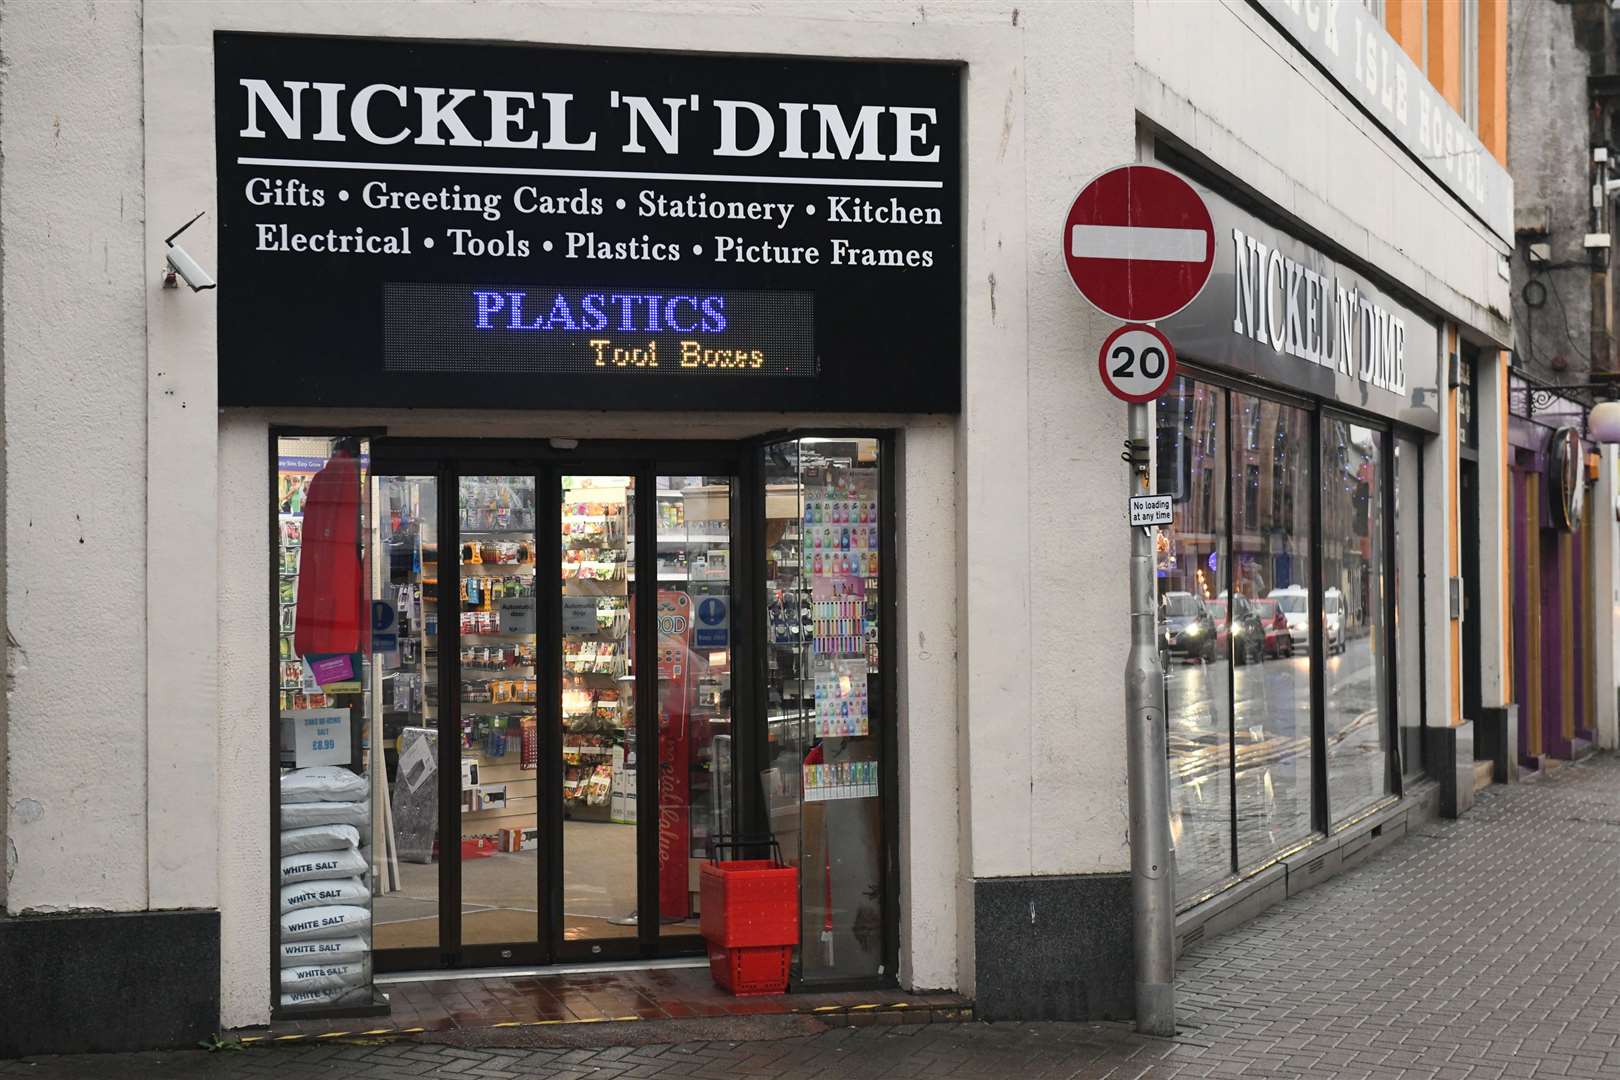 Nickel 'N' Dime store in Academy Street.